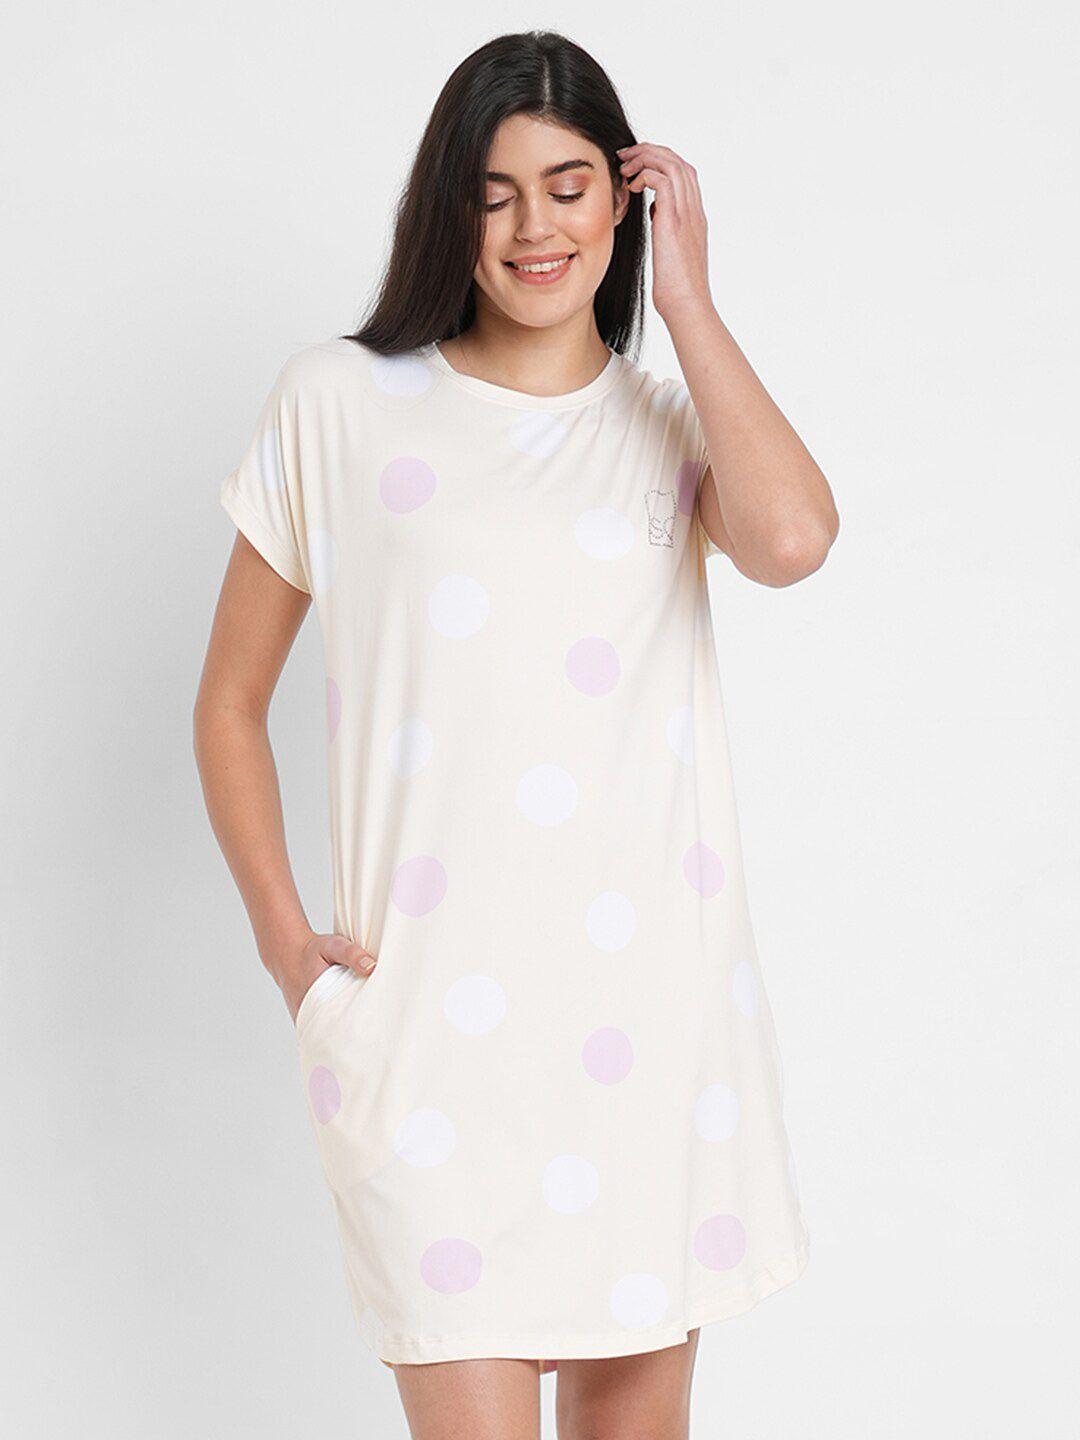 sweet-dreams-polka-dots-printed-nightdress